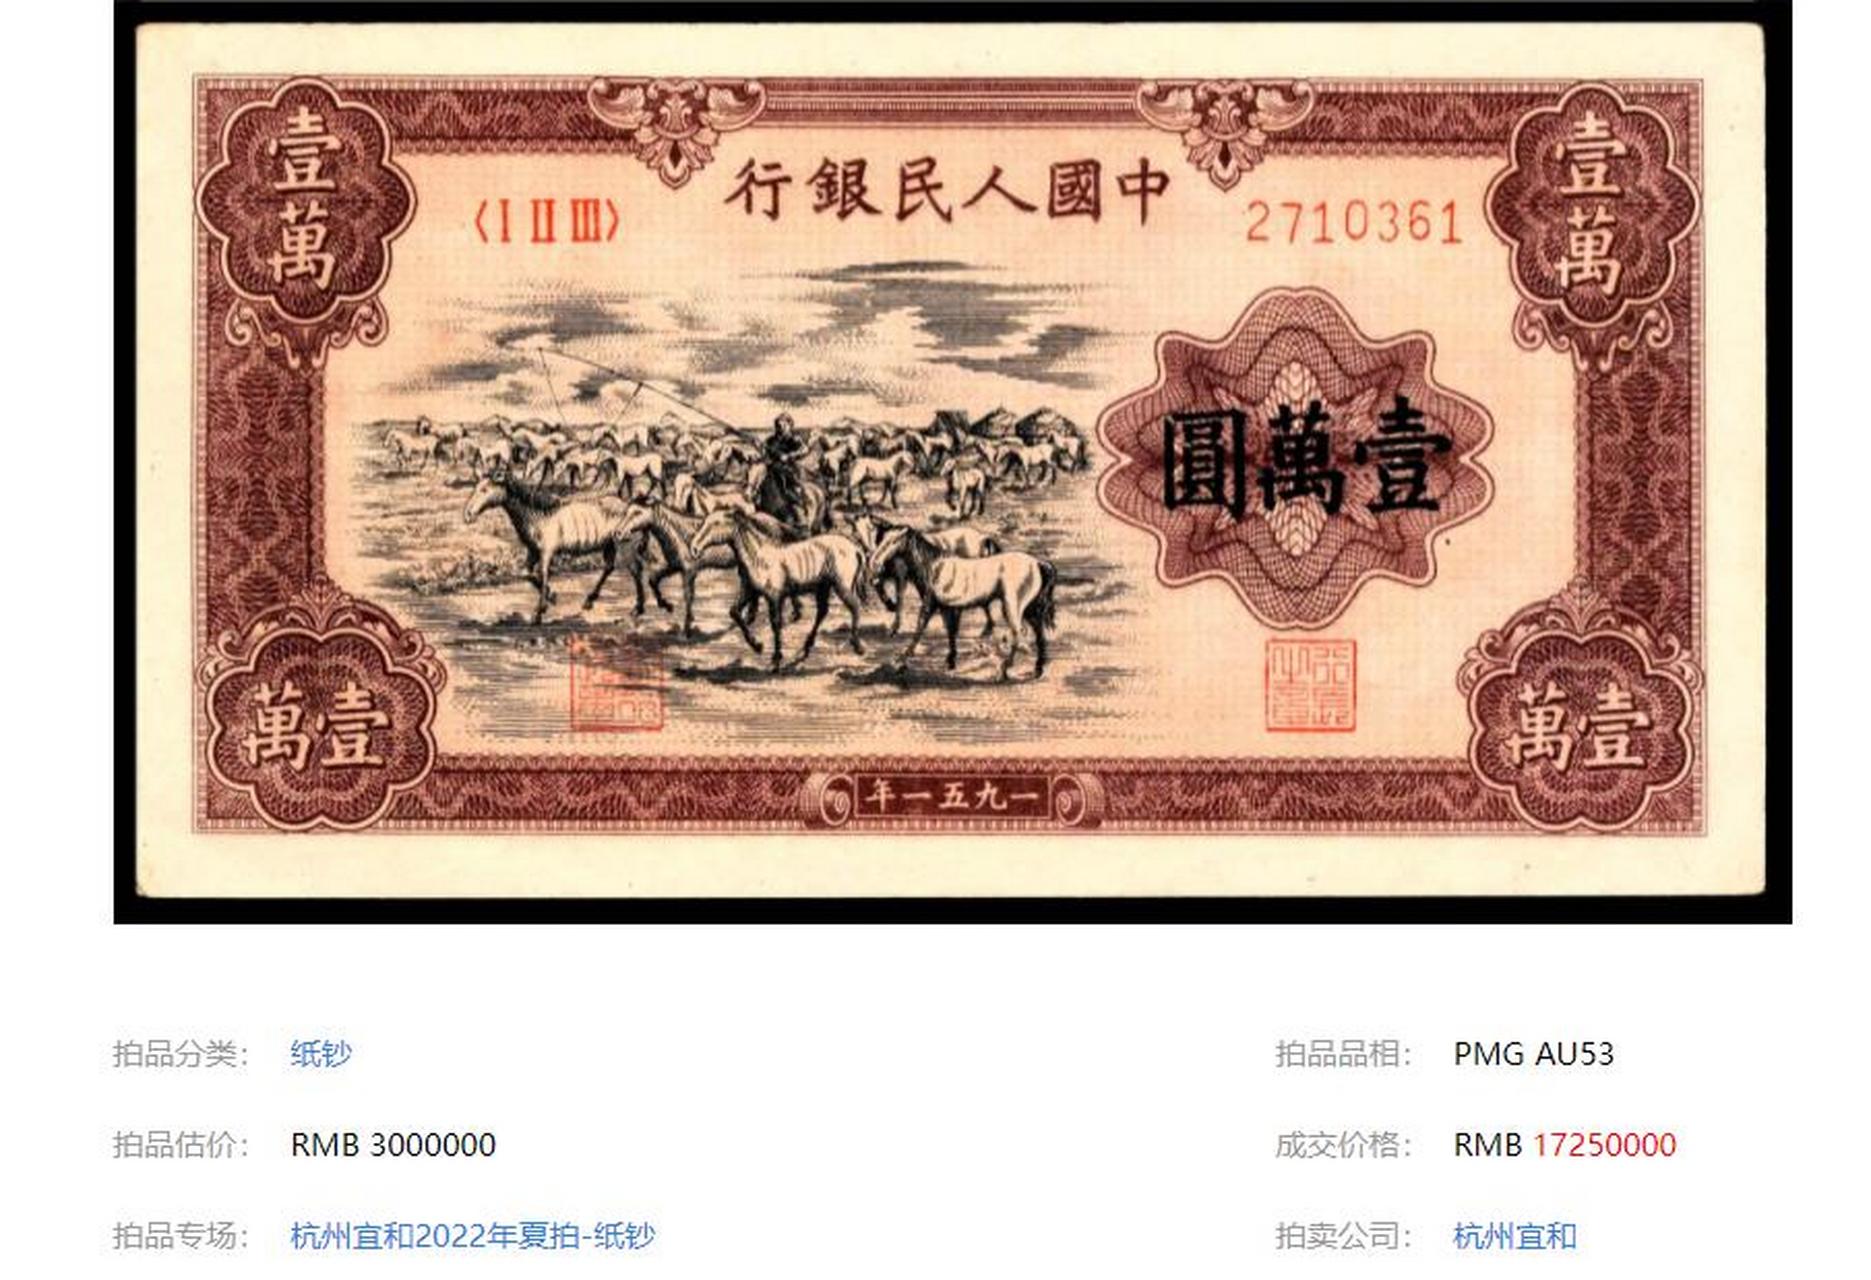 盘点拍卖史上最贵的中国钱币: 第十一名:1951年一版币壹万圆牧马图